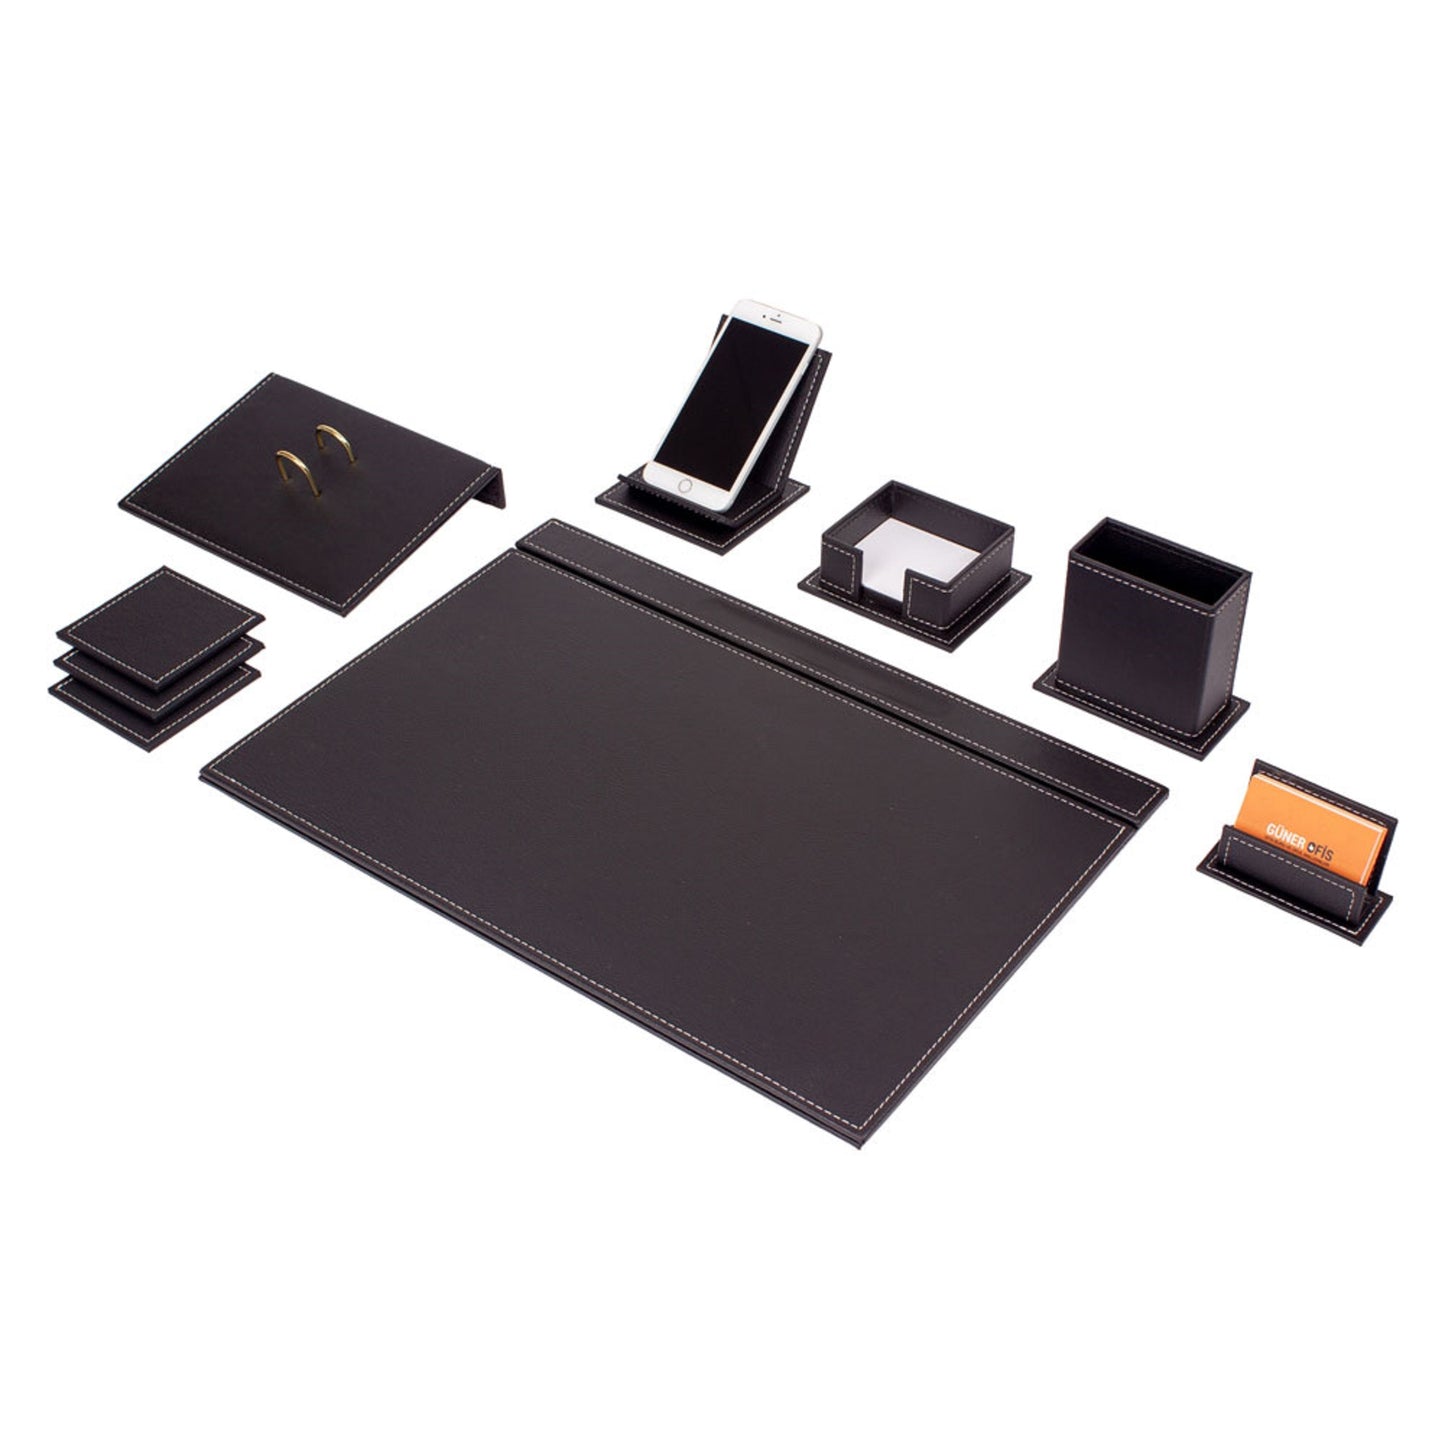 MOOG Leather Desk Set - Desk Organizer Set - Office Desk Pad Accessories -  Calendar holder - 9 Accessories-Desk Organizer - Office Desk Accessories 